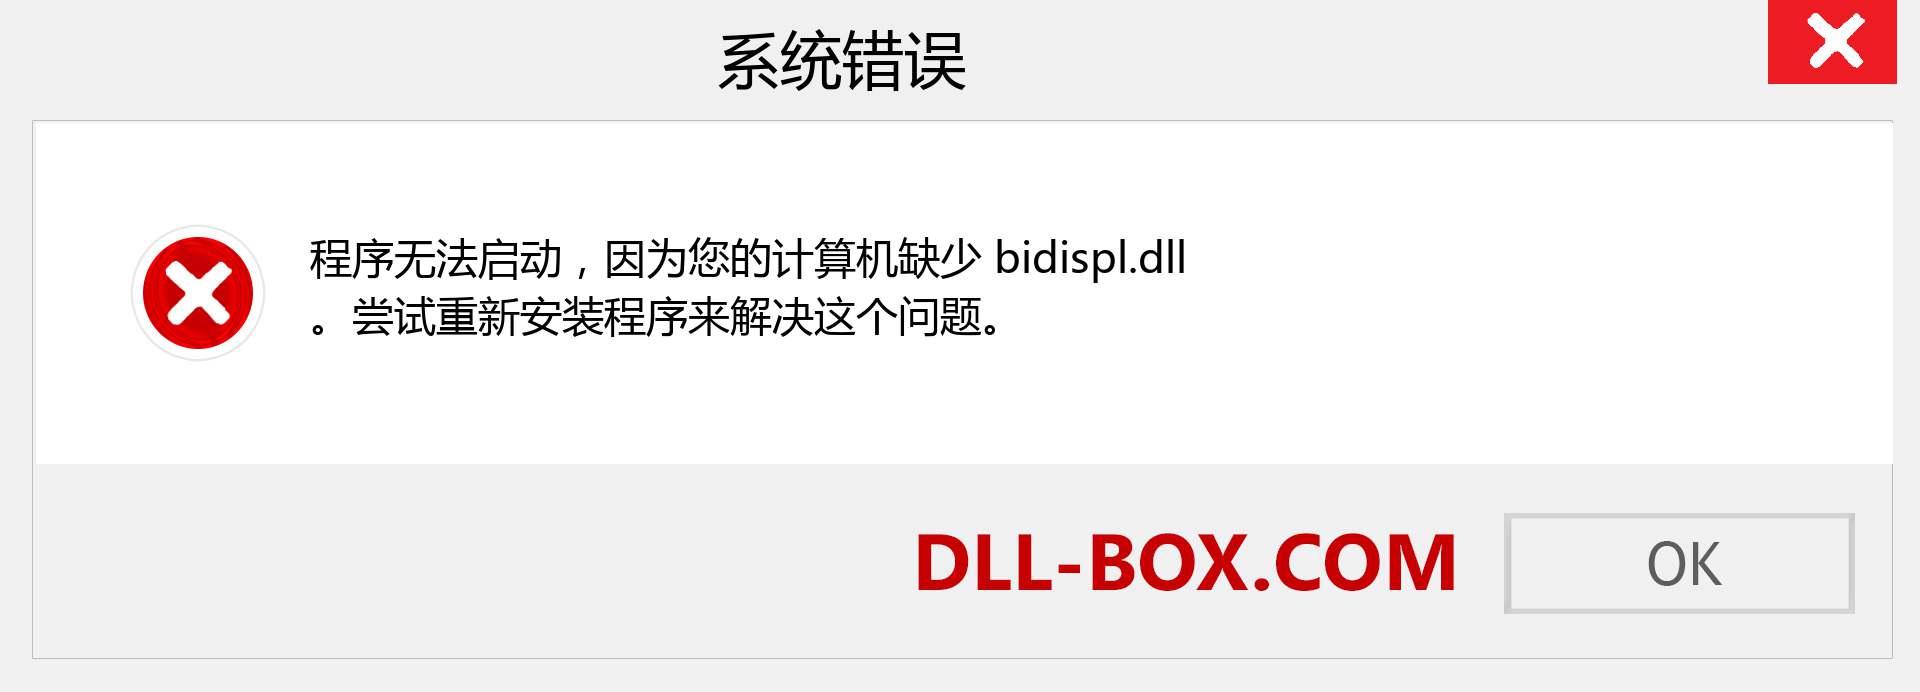 bidispl.dll 文件丢失？。 适用于 Windows 7、8、10 的下载 - 修复 Windows、照片、图像上的 bidispl dll 丢失错误